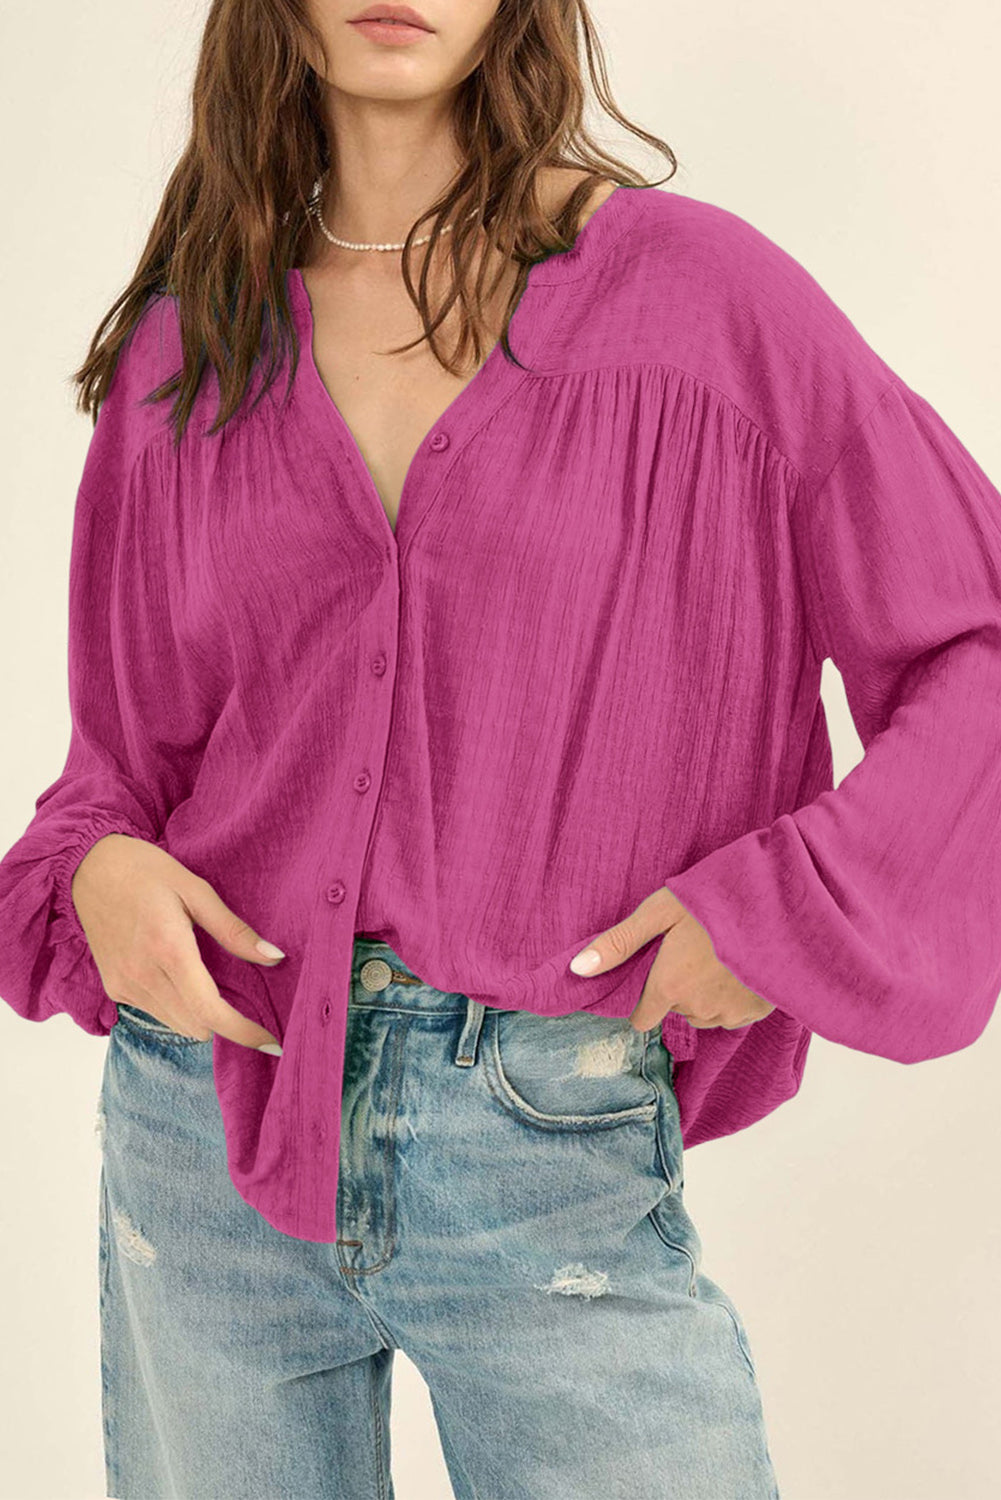 Chemise boutonnée à manches bouffantes en jacquard de couleur unie rose